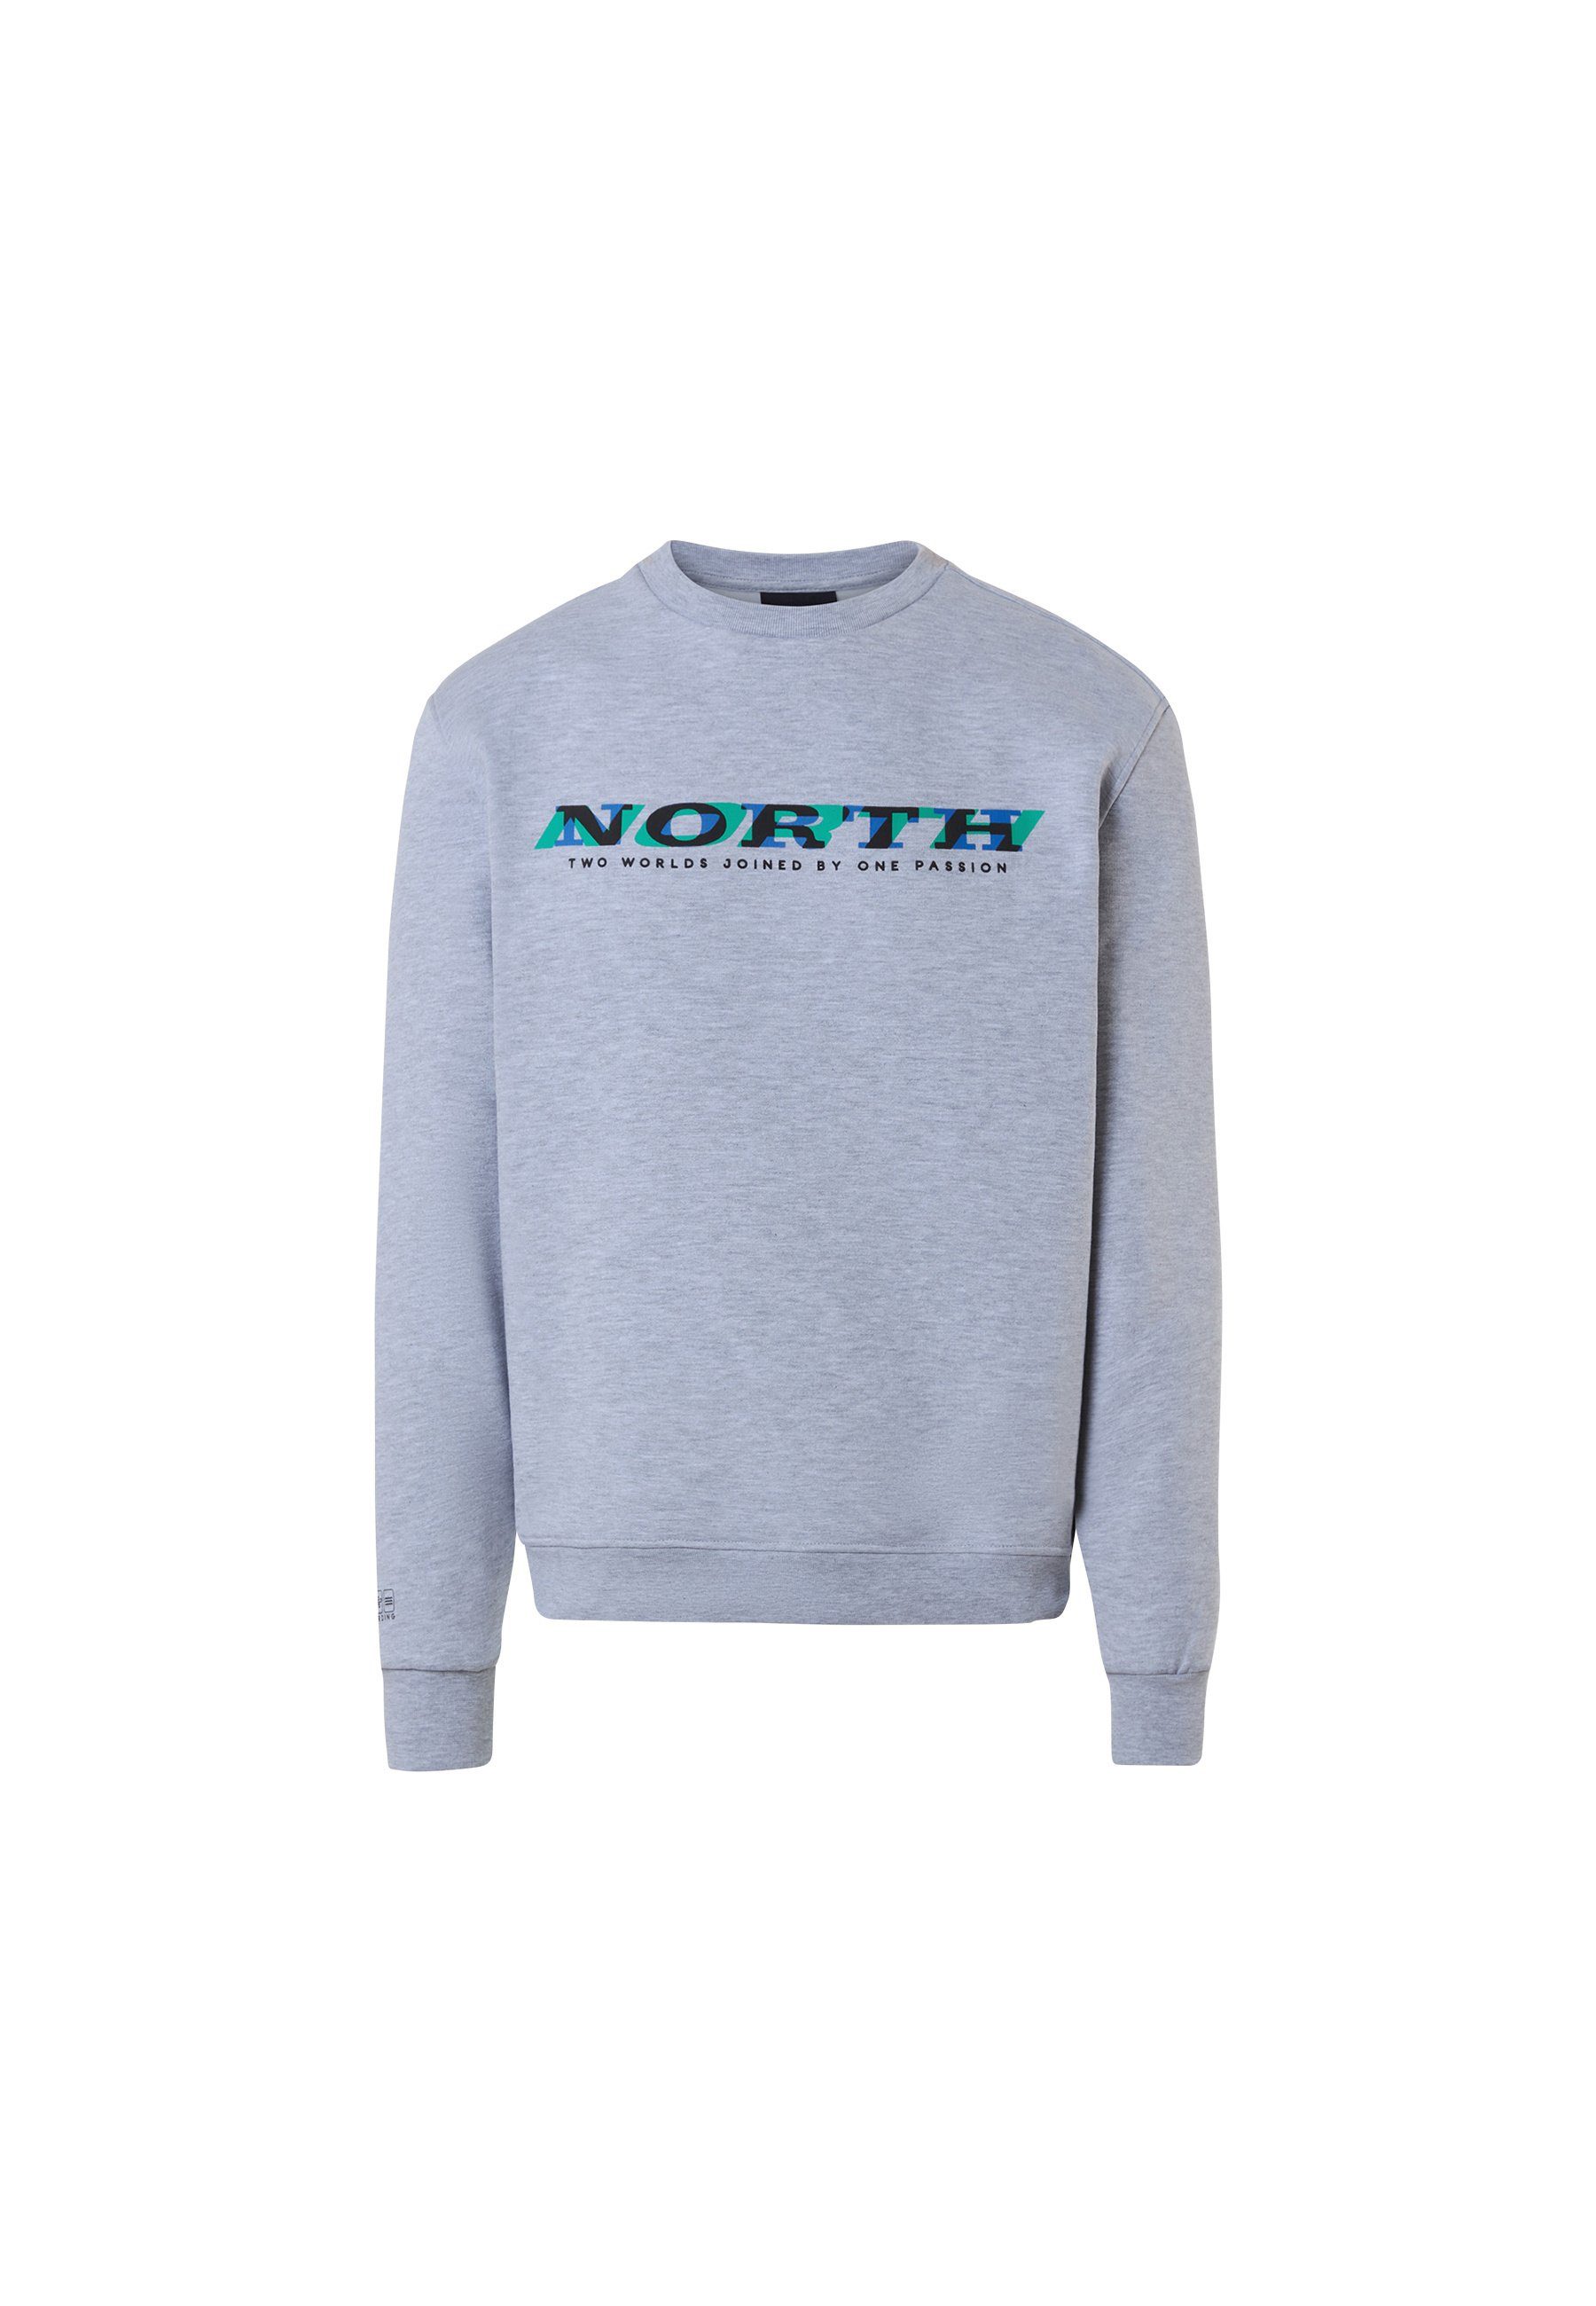 North mit Sails Sweatshirt Fleecepullover grey Rundhalsausschnittausschnitt